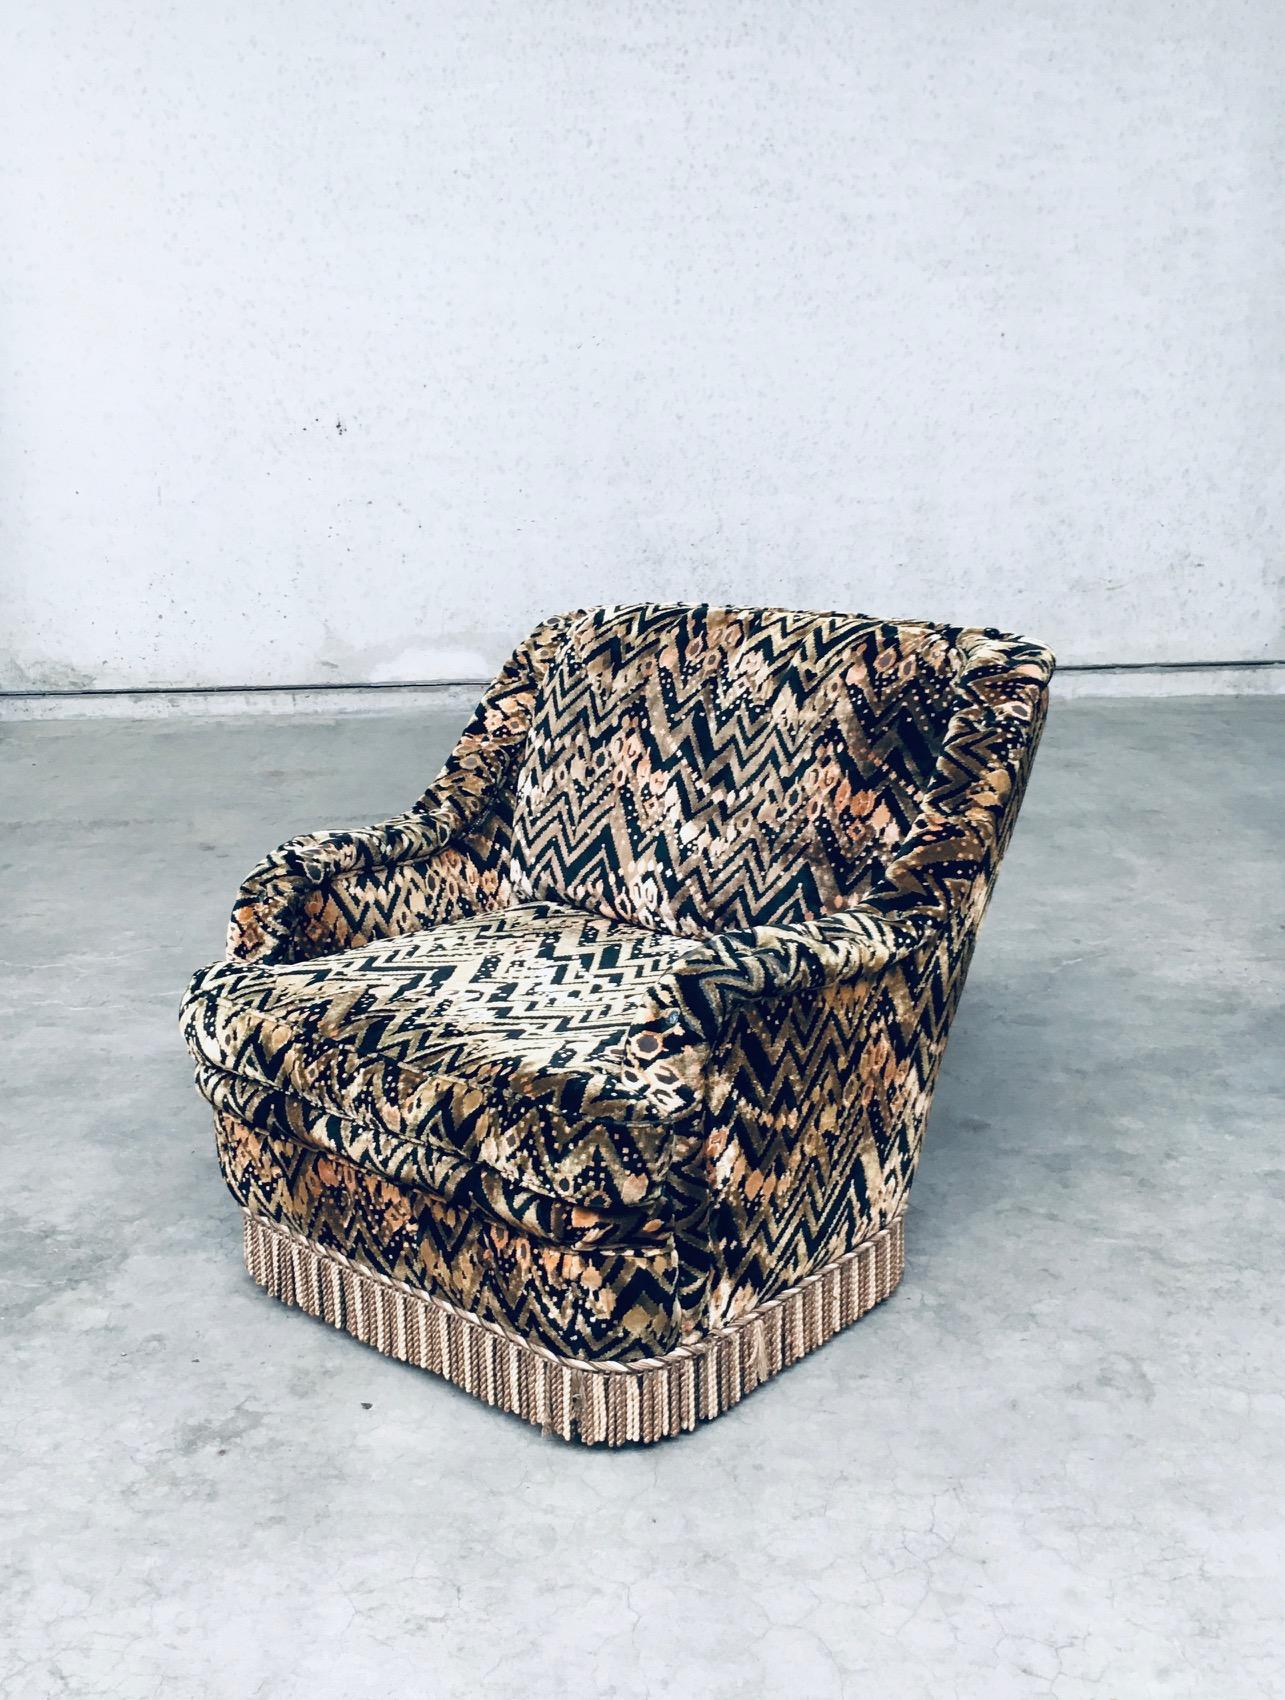 Belgian Op-Art Psychedelic Print Lounge Chair, 1960's Belgium For Sale